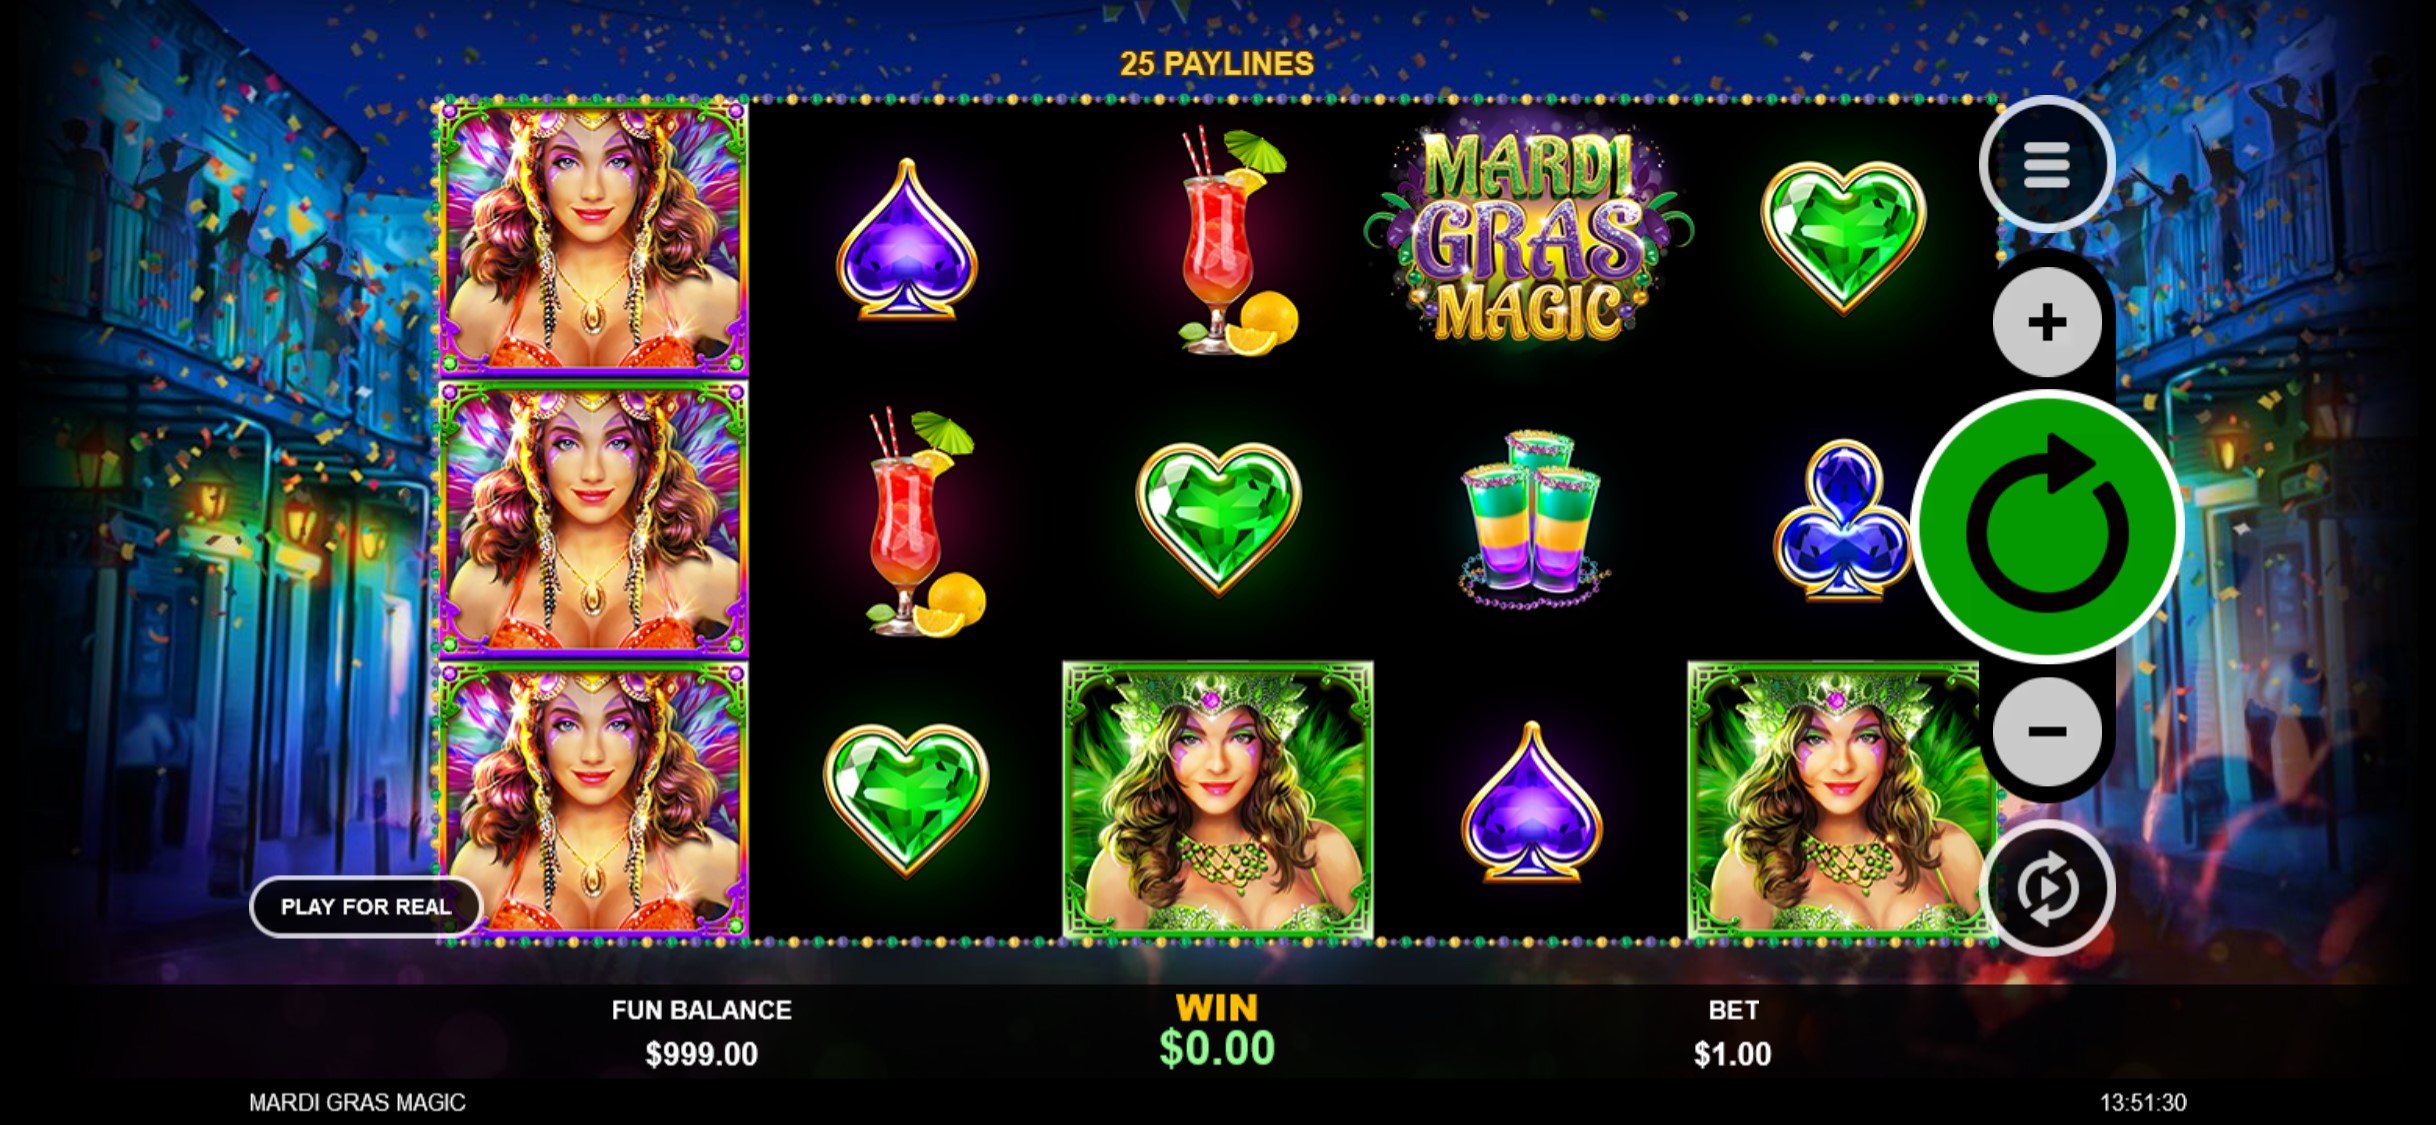 True Blue Casino Mobile Slot Games Review